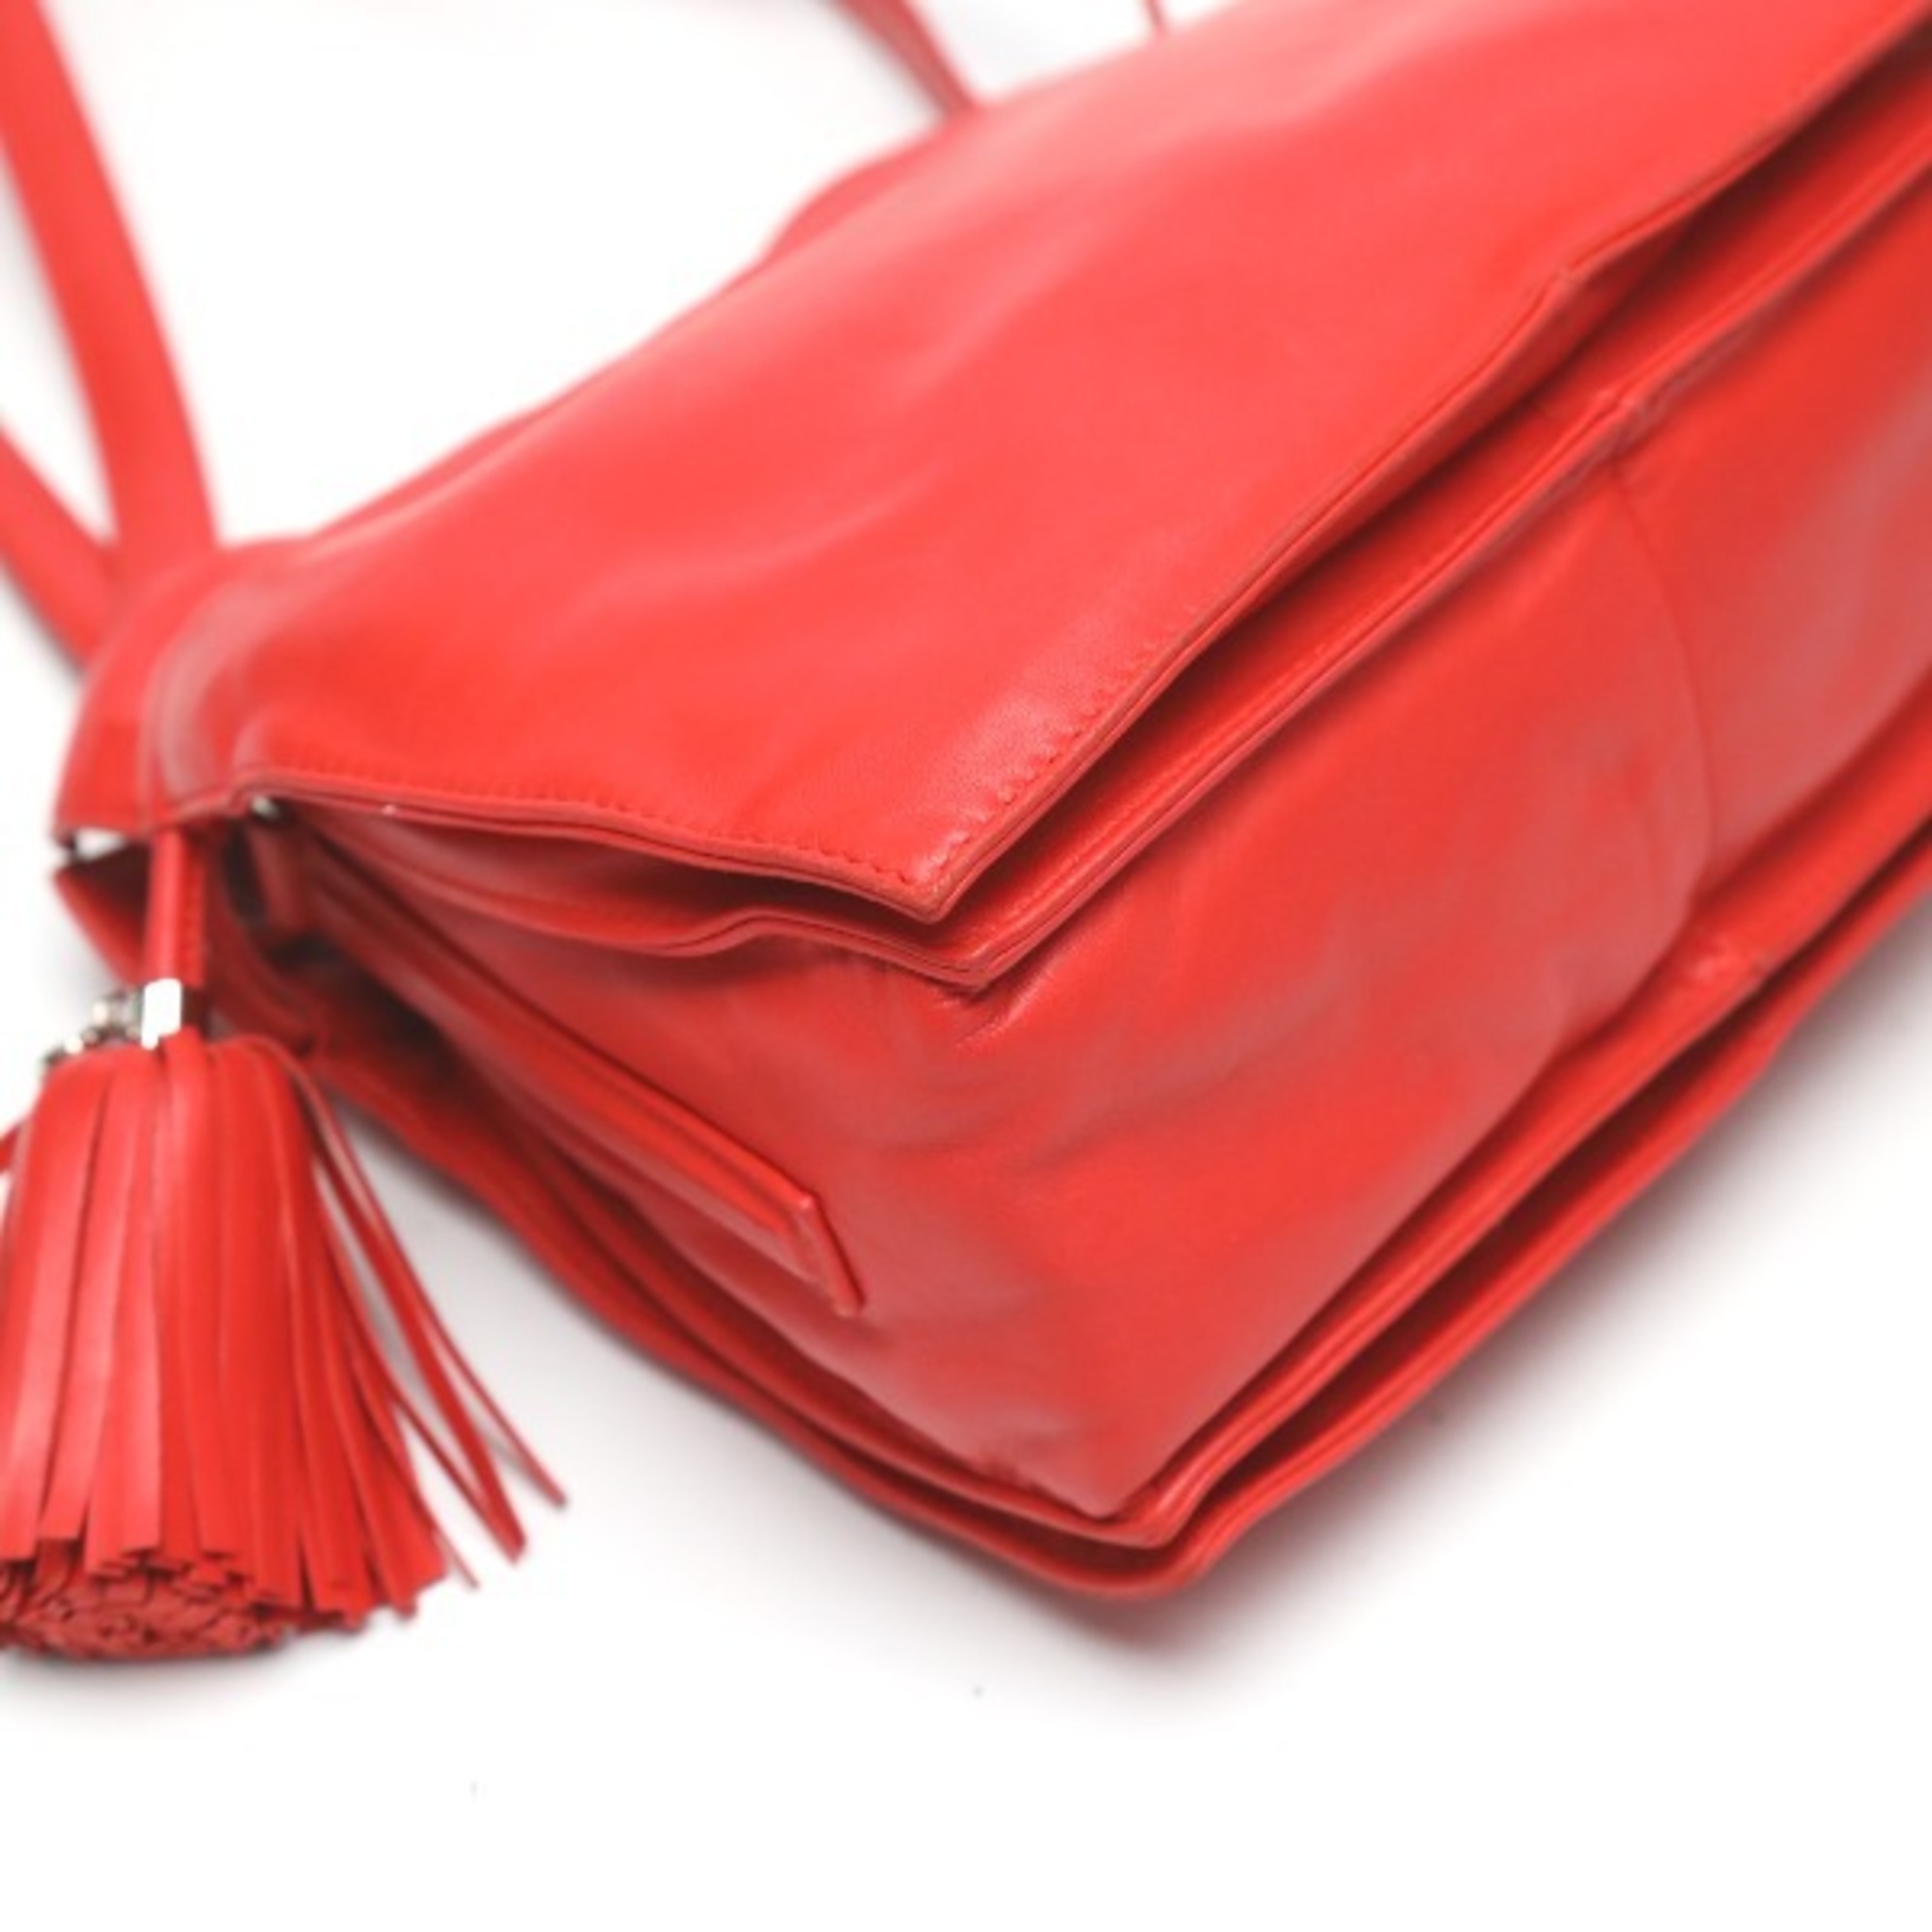 LOEWE Tassel Leather 2WAY 380 82 E17 Red Shoulder Bag